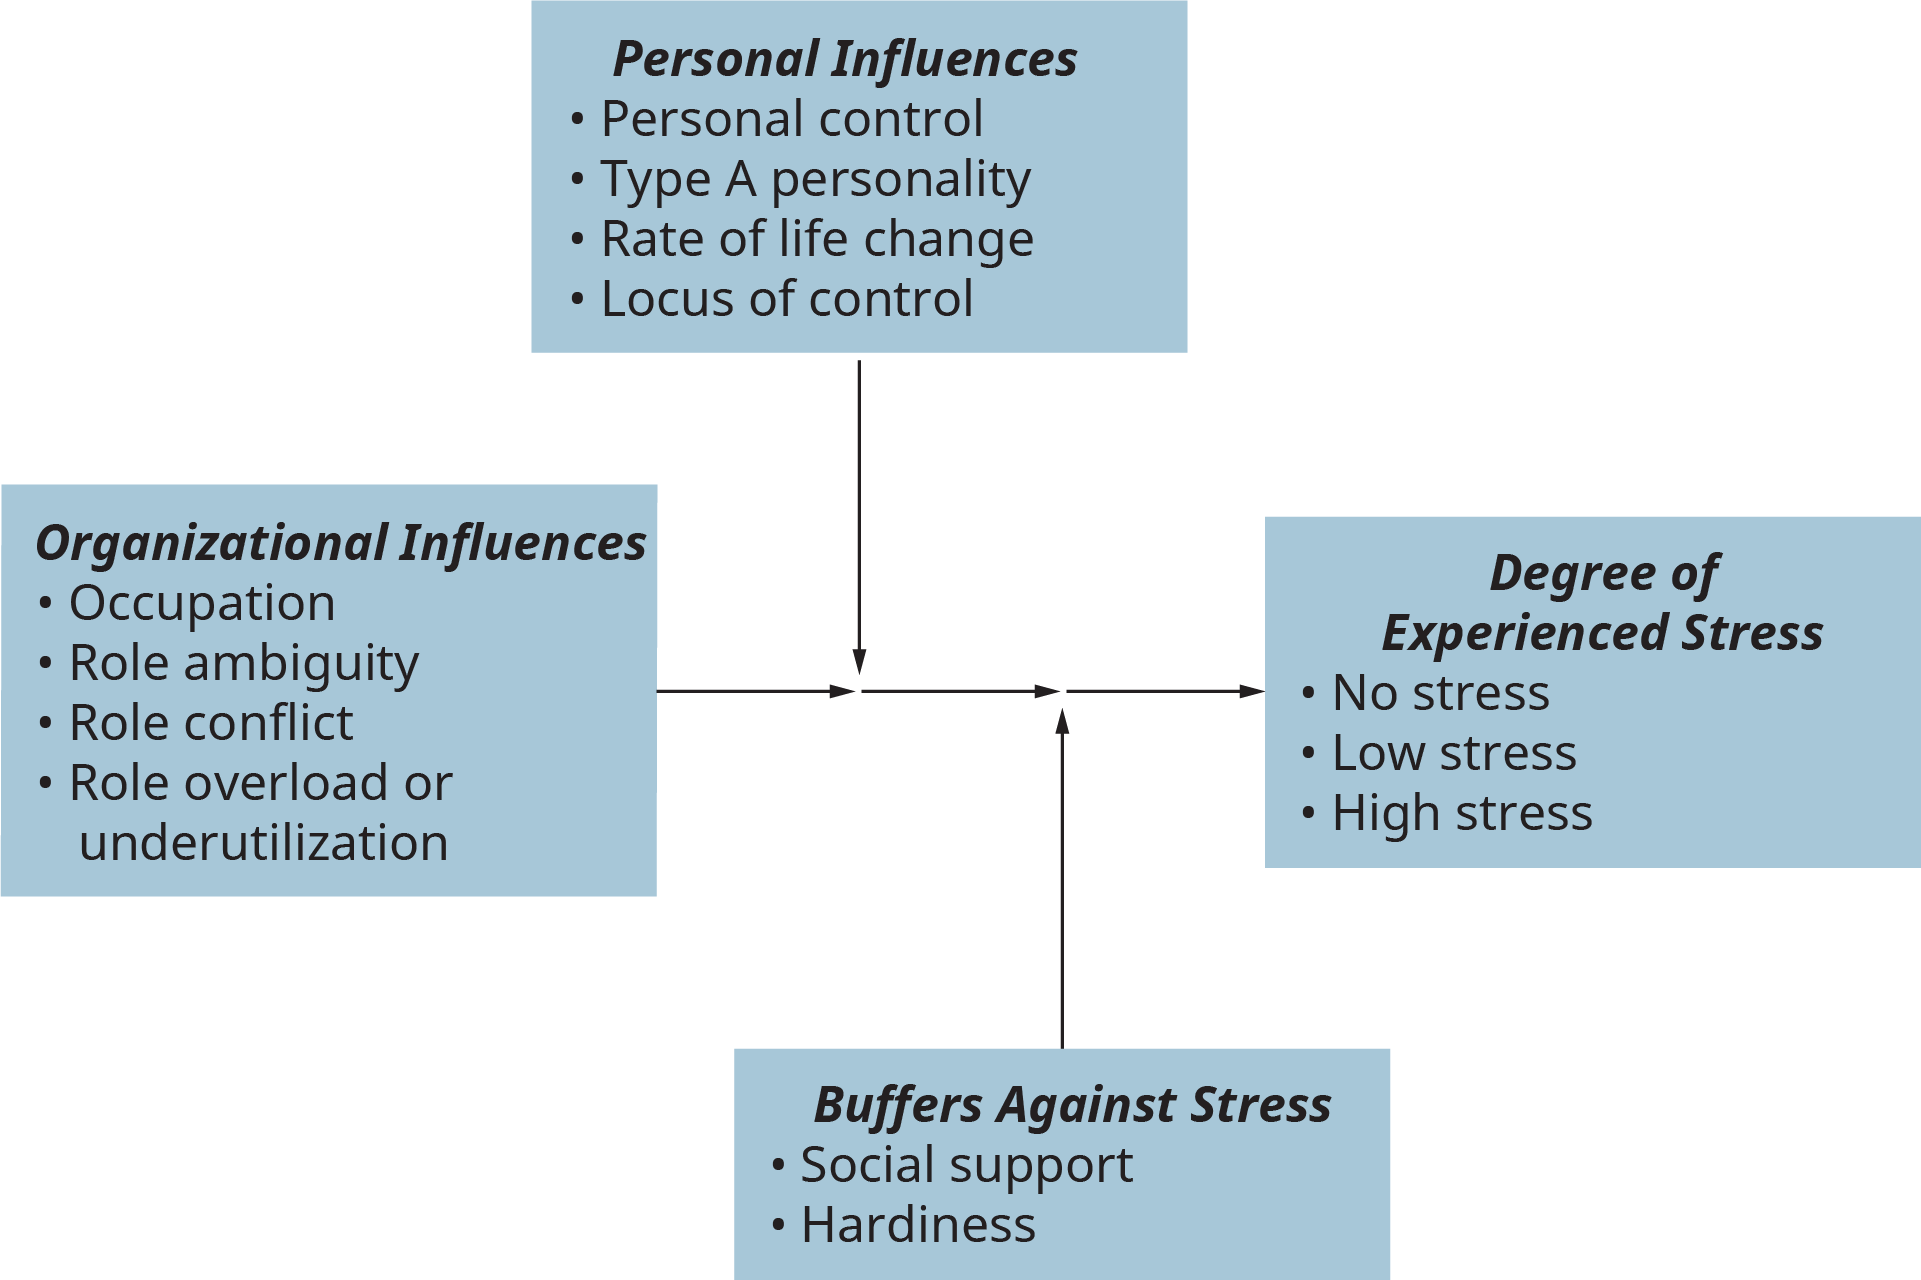 Una ilustración muestra las principales influencias en el estrés relacionado con el trabajo, los efectos amortiguadores sobre el estrés relacionado con el trabajo y el grado de estrés experimentado.